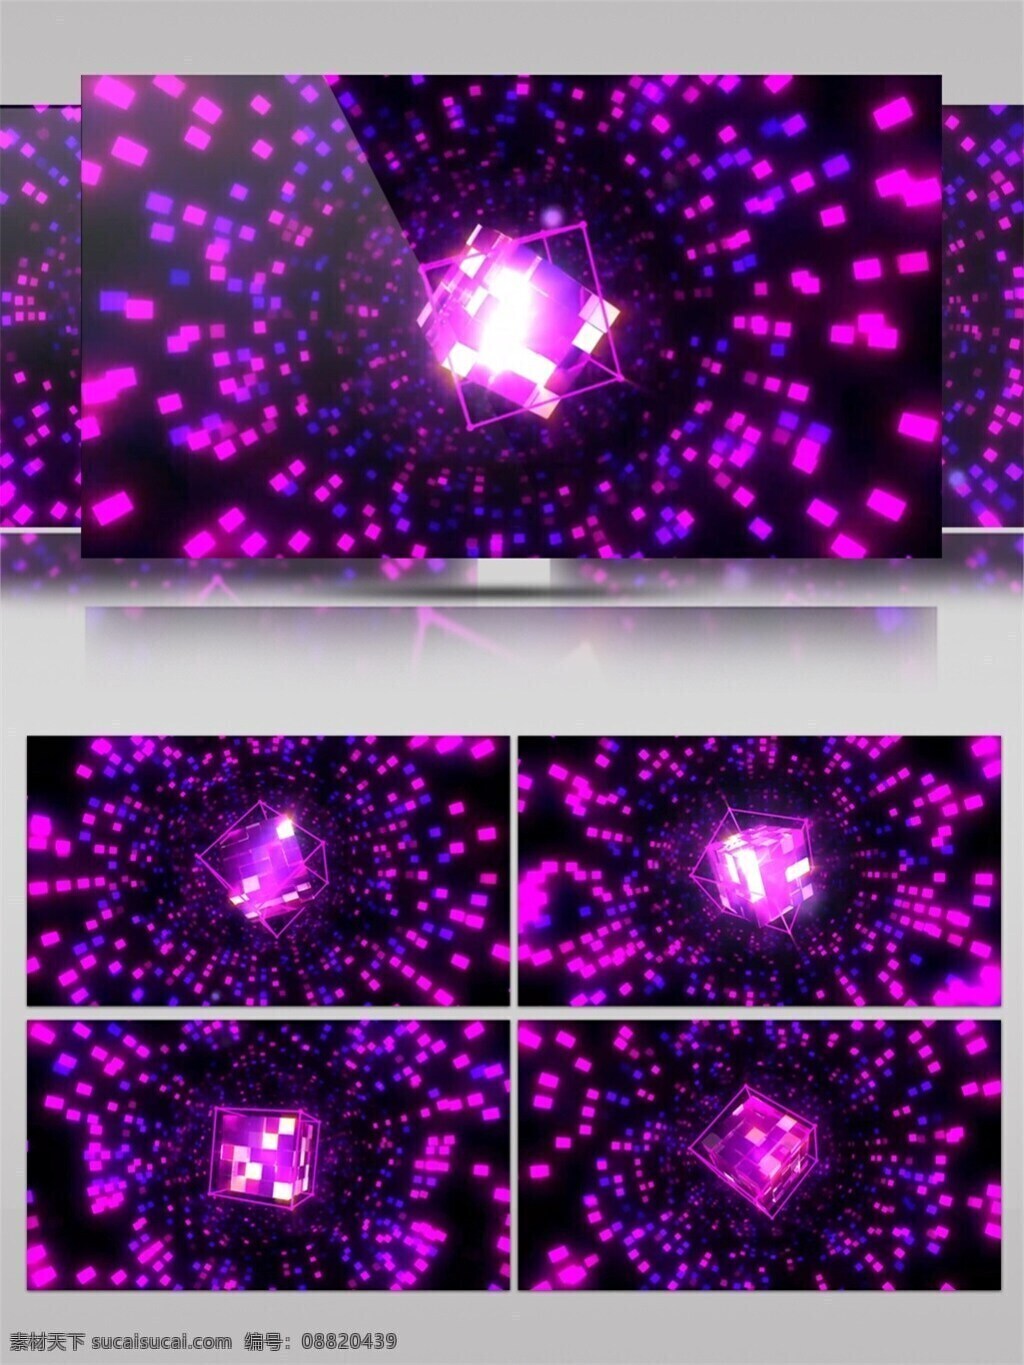 华丽 紫色 海 高清 视频 粒子海 炫酷华丽 紫色光芒 晚会特效 渲染灯光 华丽光转 vj灯光 vj光线 3d视频素材 特效视频素材